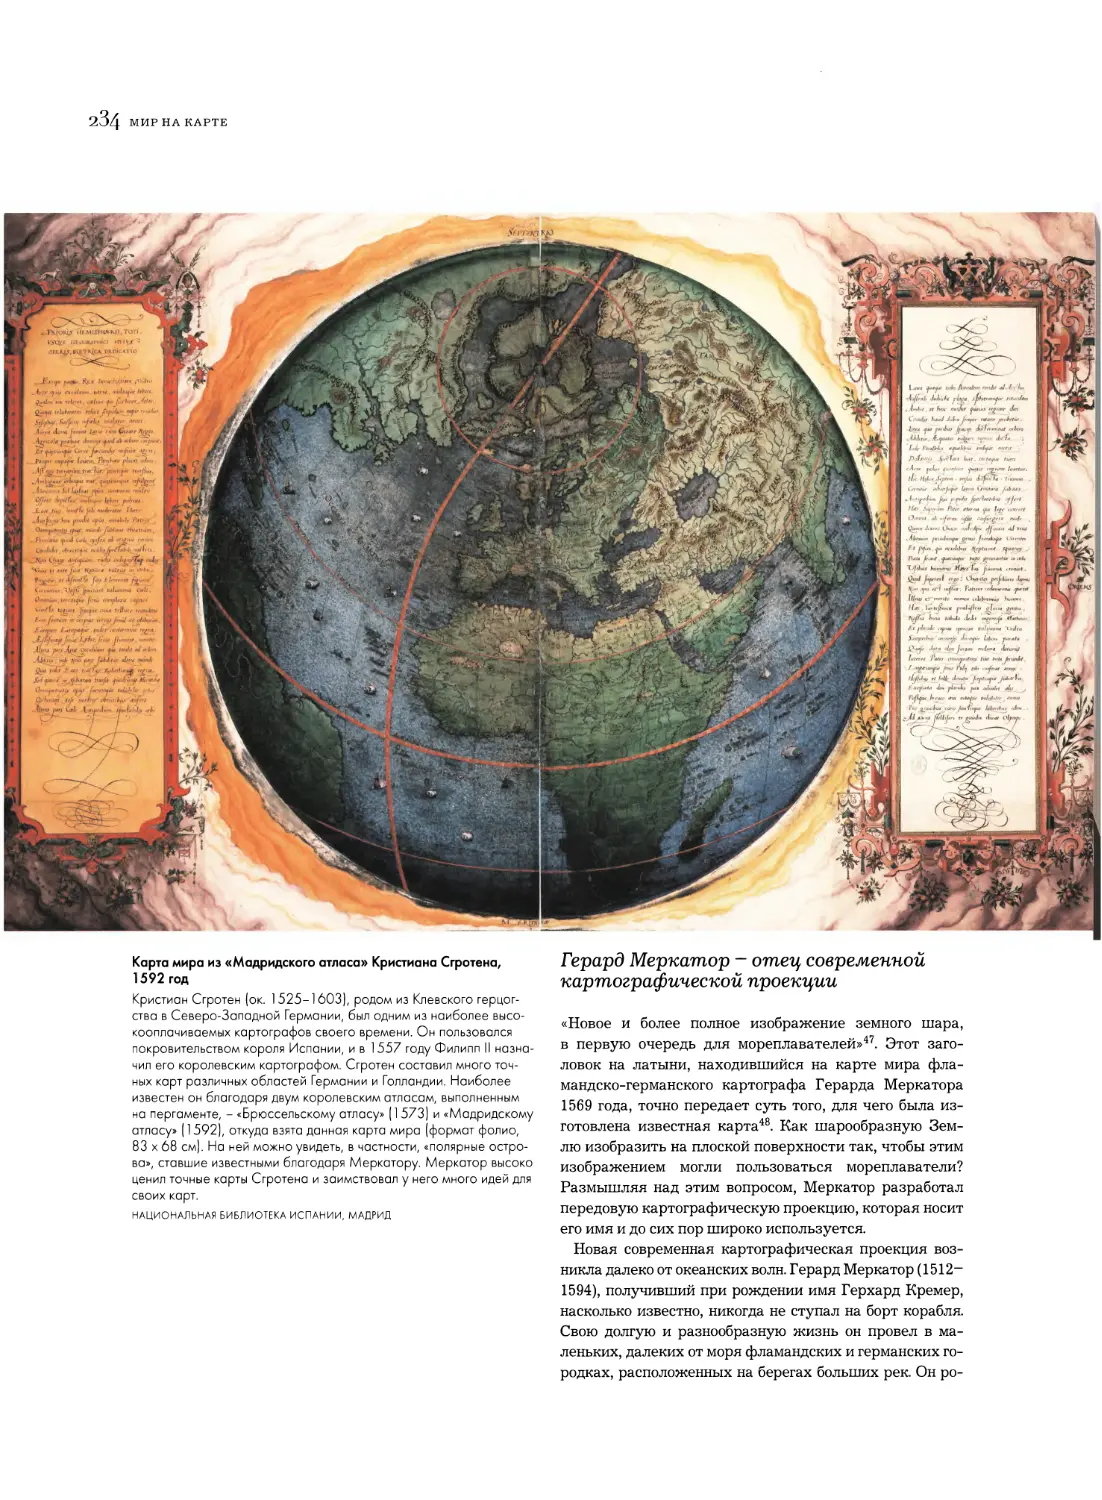 Герард Меркатор - отец современной картографической проекции